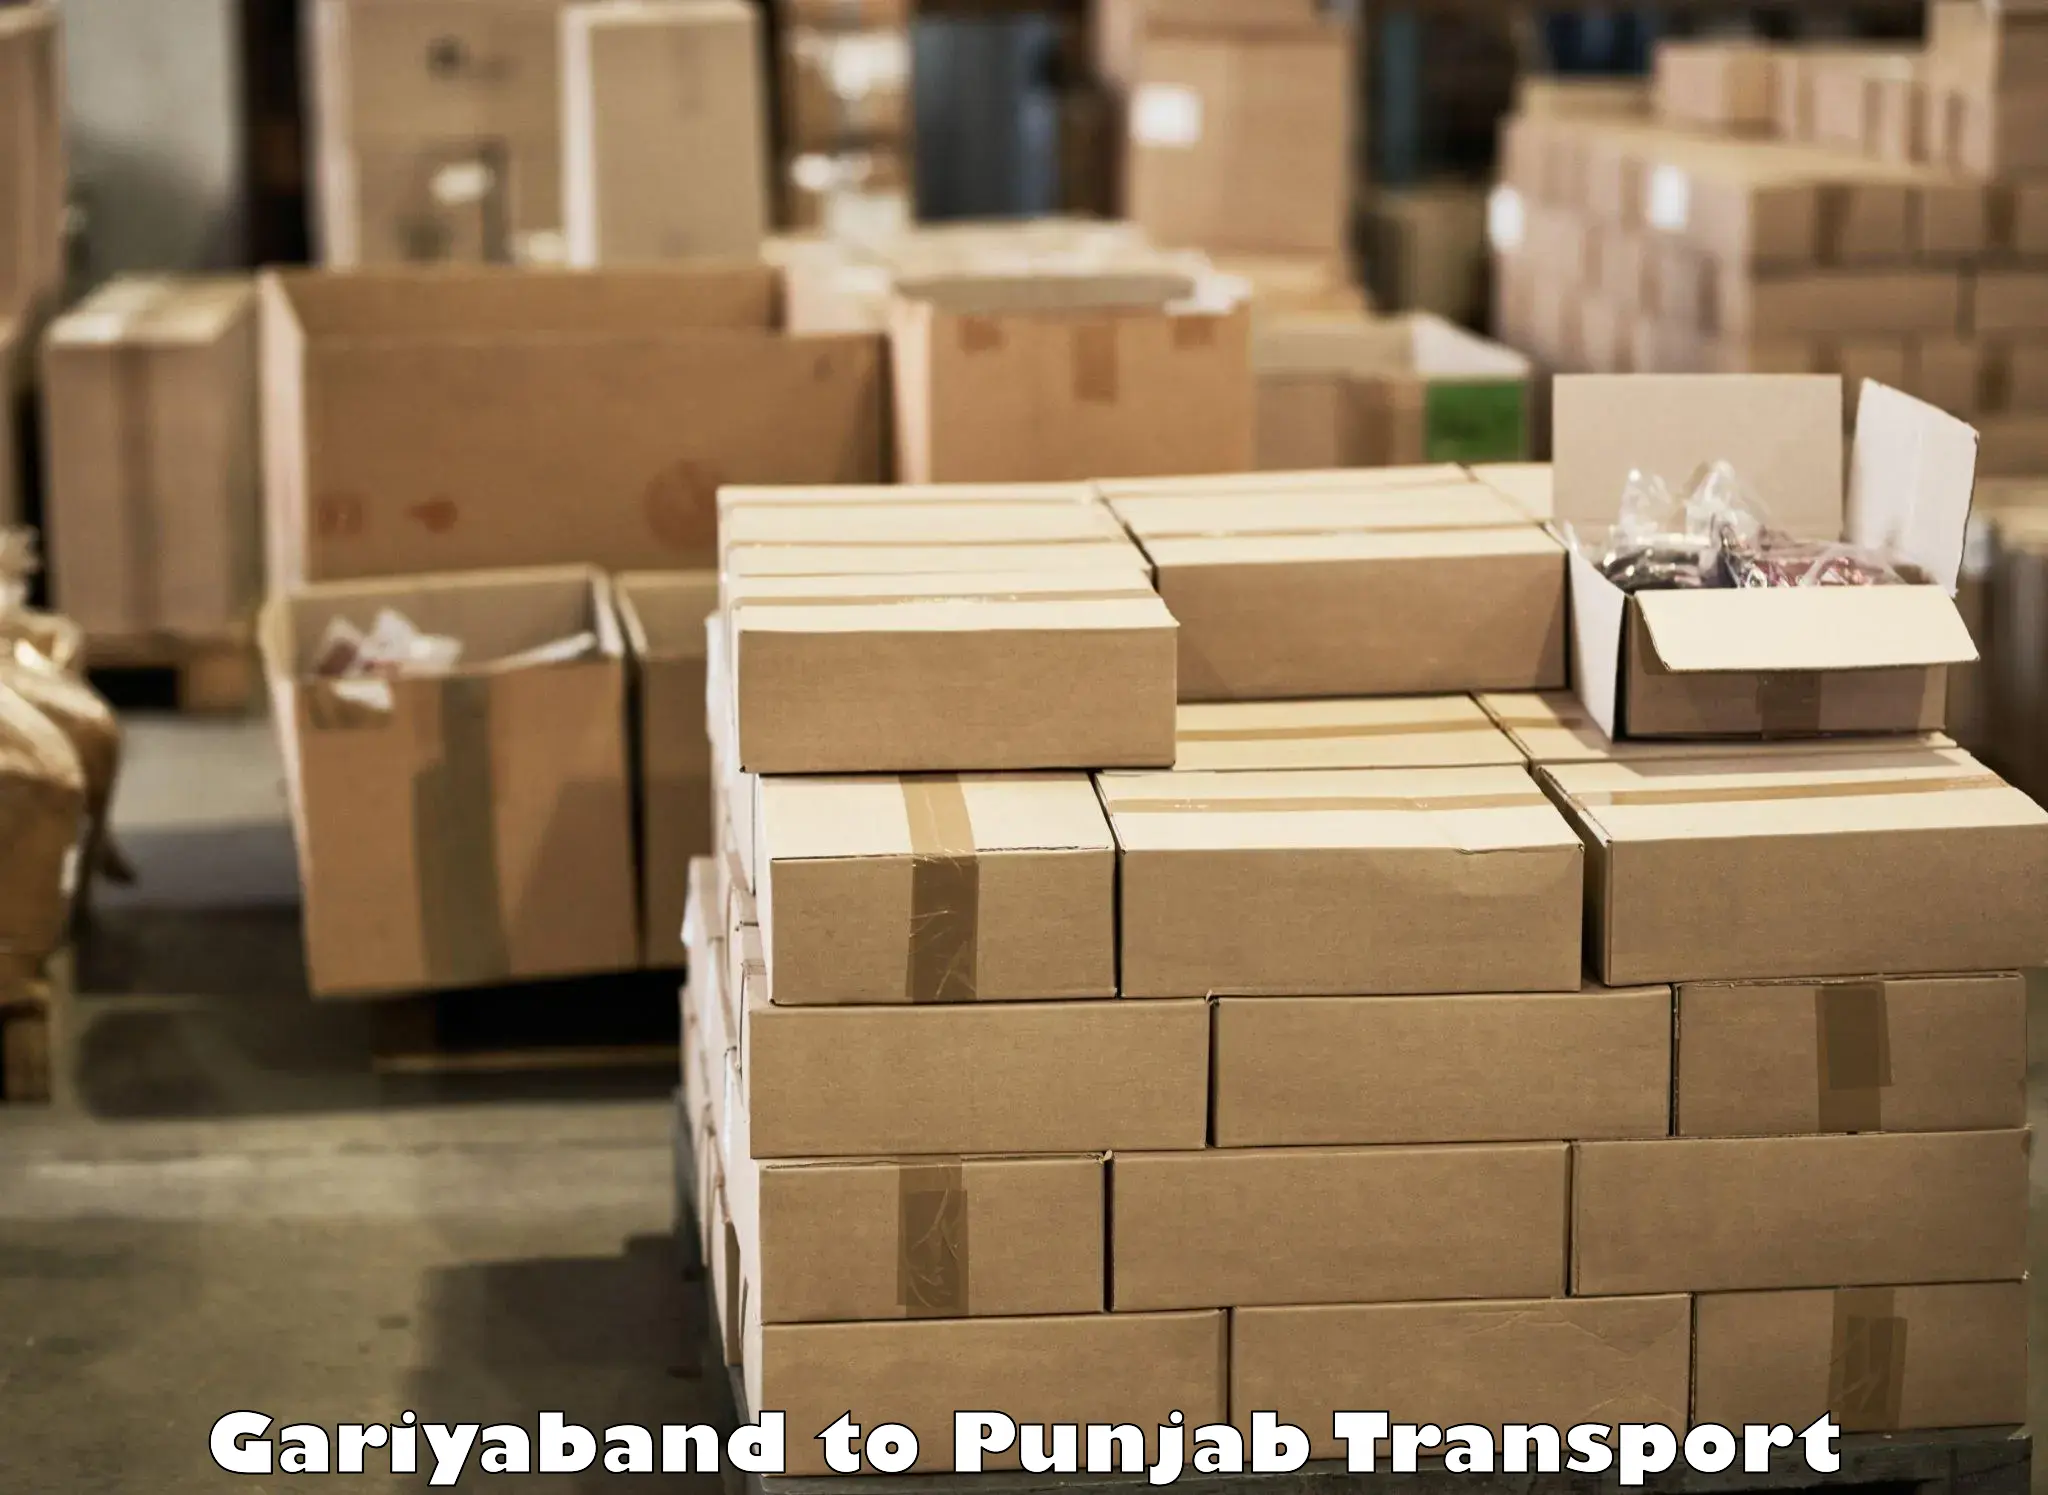 Container transport service Gariyaband to Rajpura